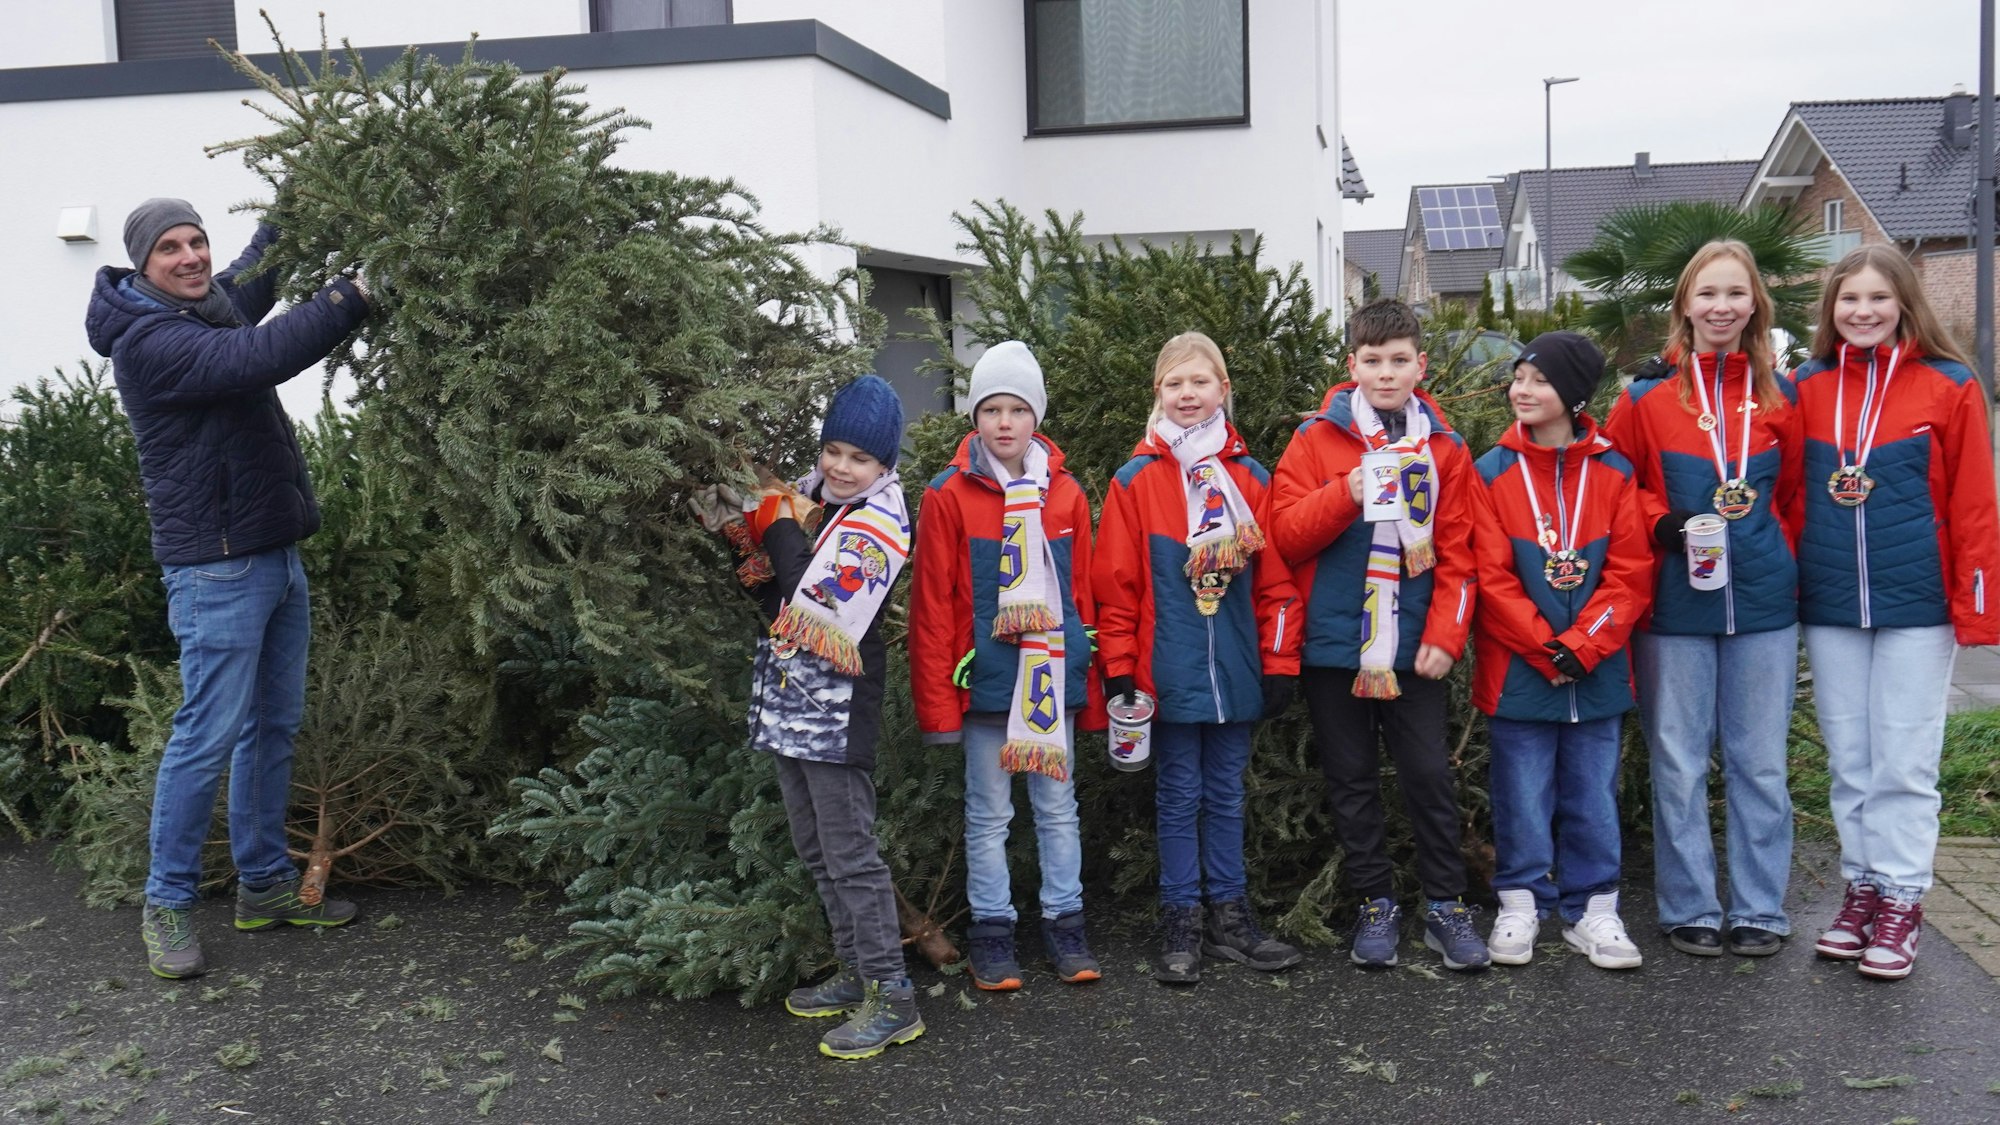 Zu sehen ist eine Gruppe von Kindern, die beim Sammeln der abgeschmückten Weihnachtsbäume halfen sowie einer der beteiligten Väter.